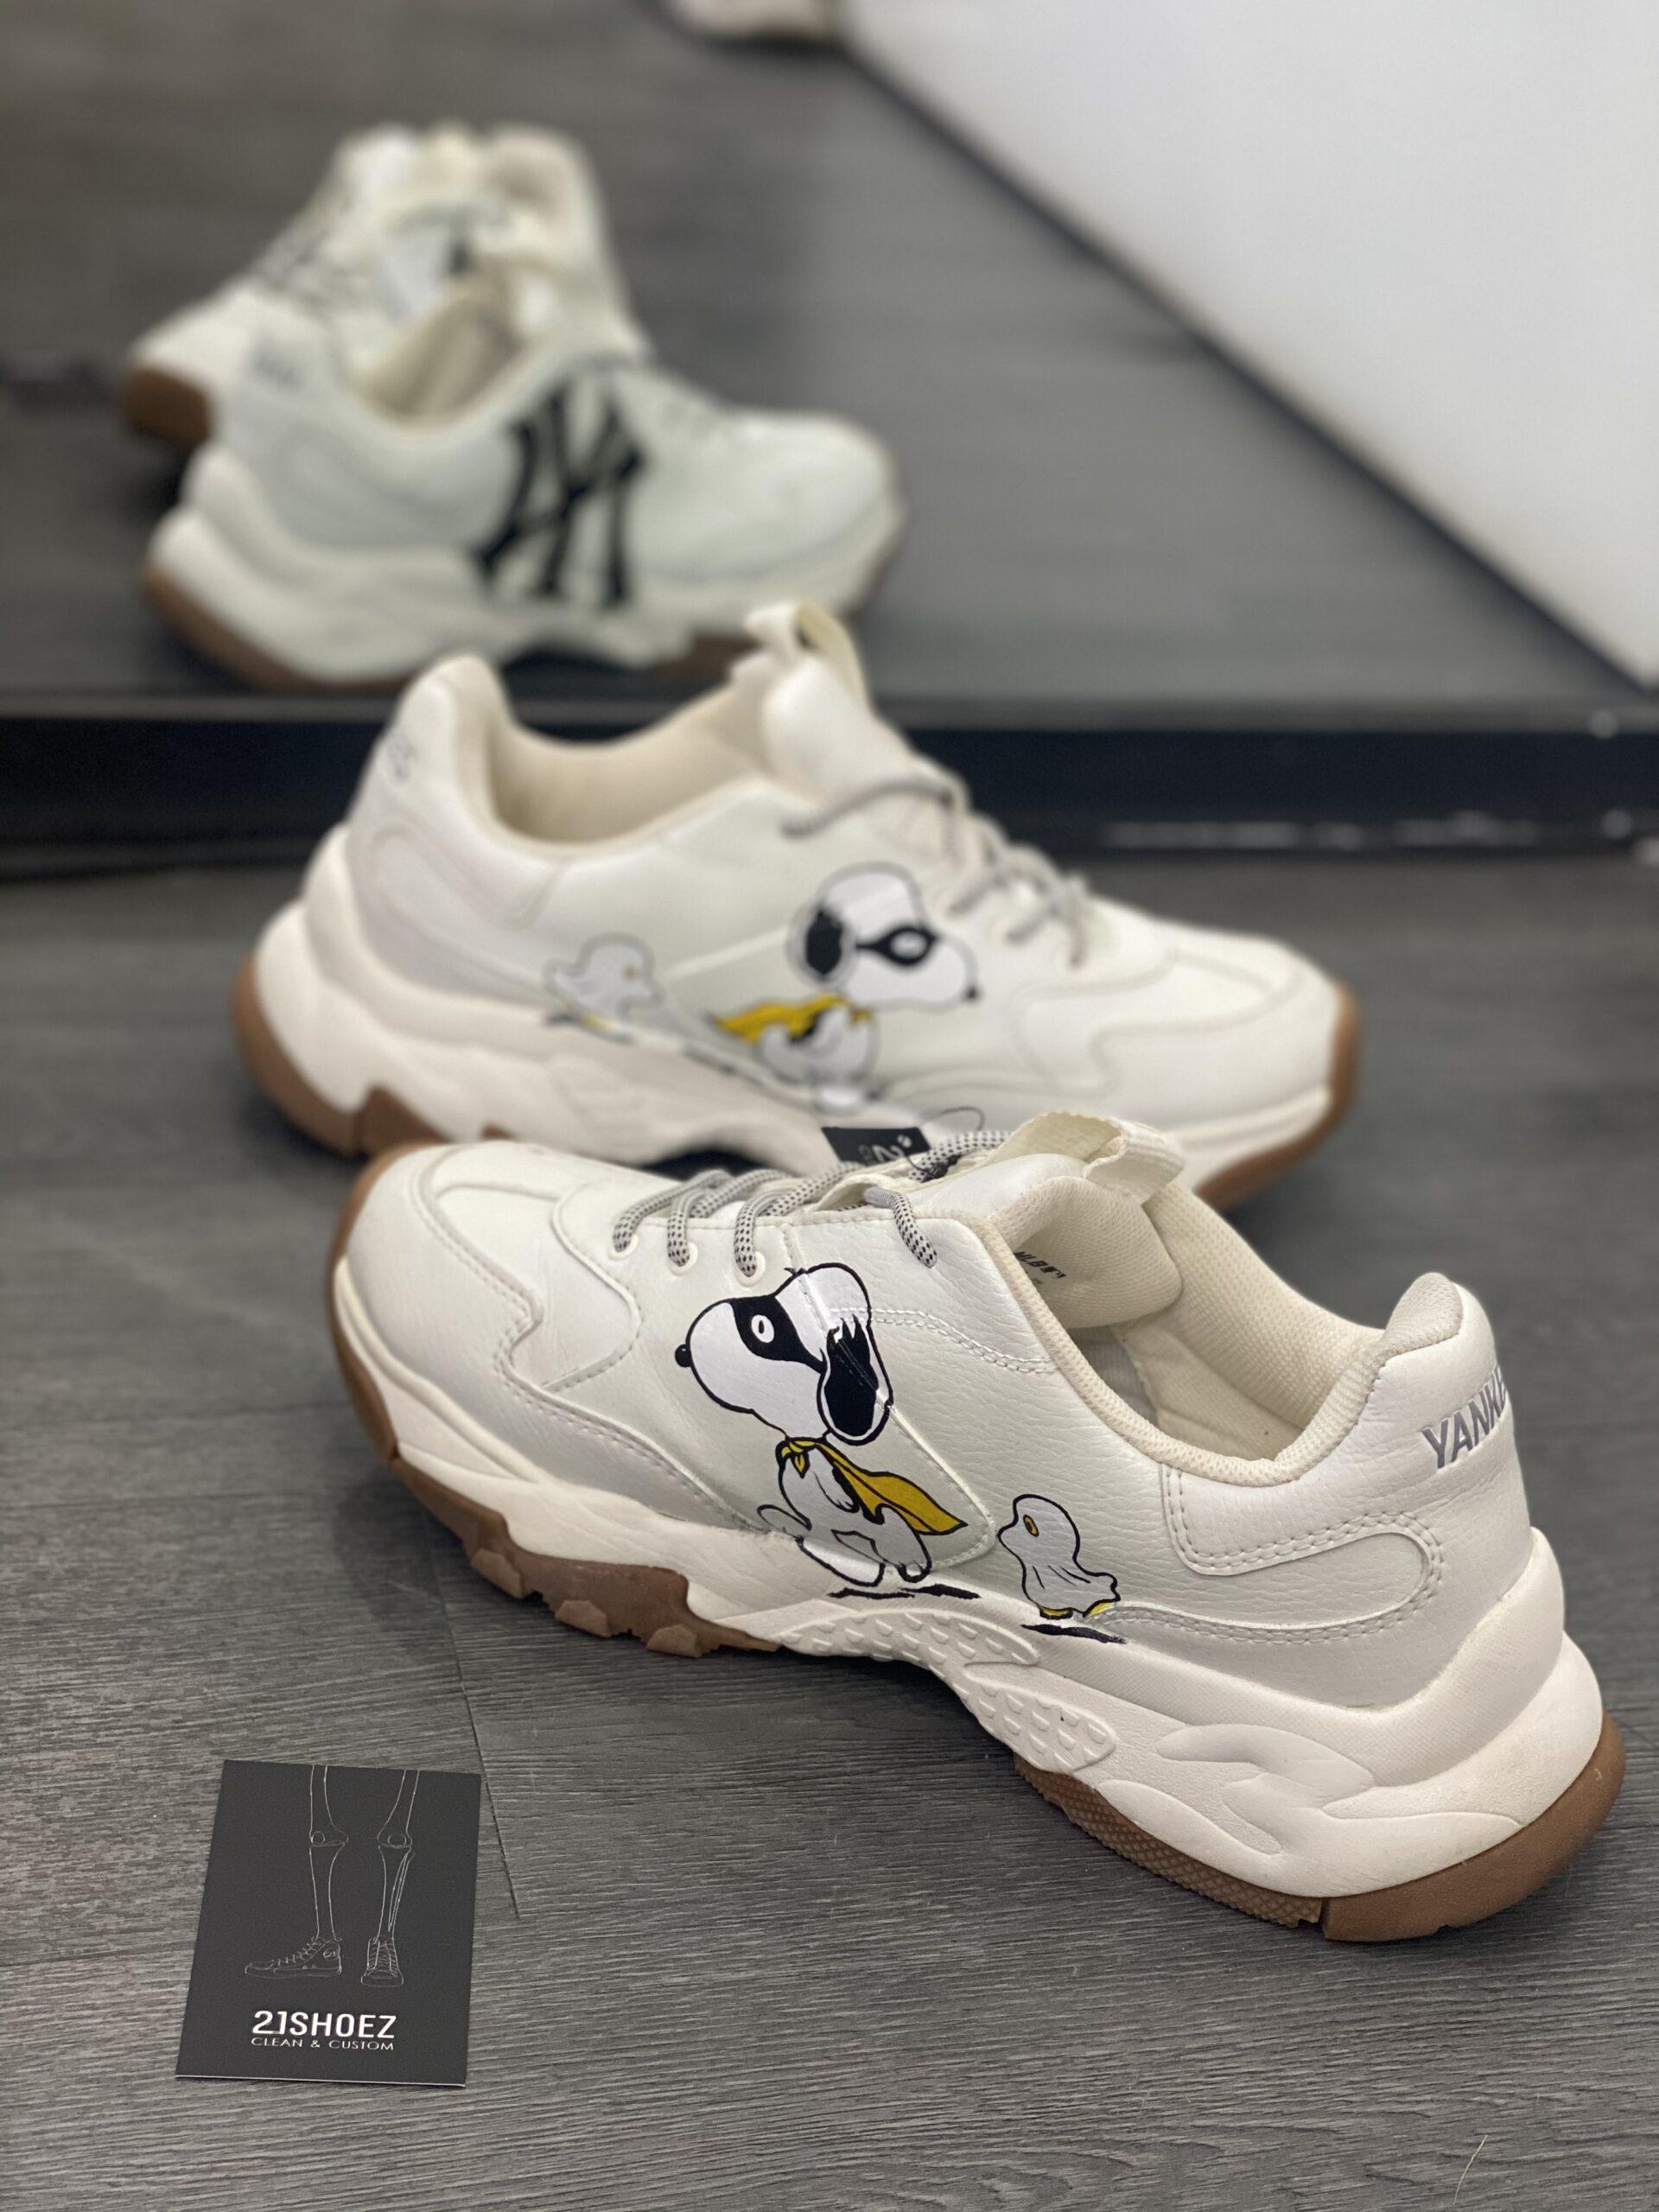 Chiêm ngưỡng các mẫu Sneaker Custom độc đáo chưa từng thấy